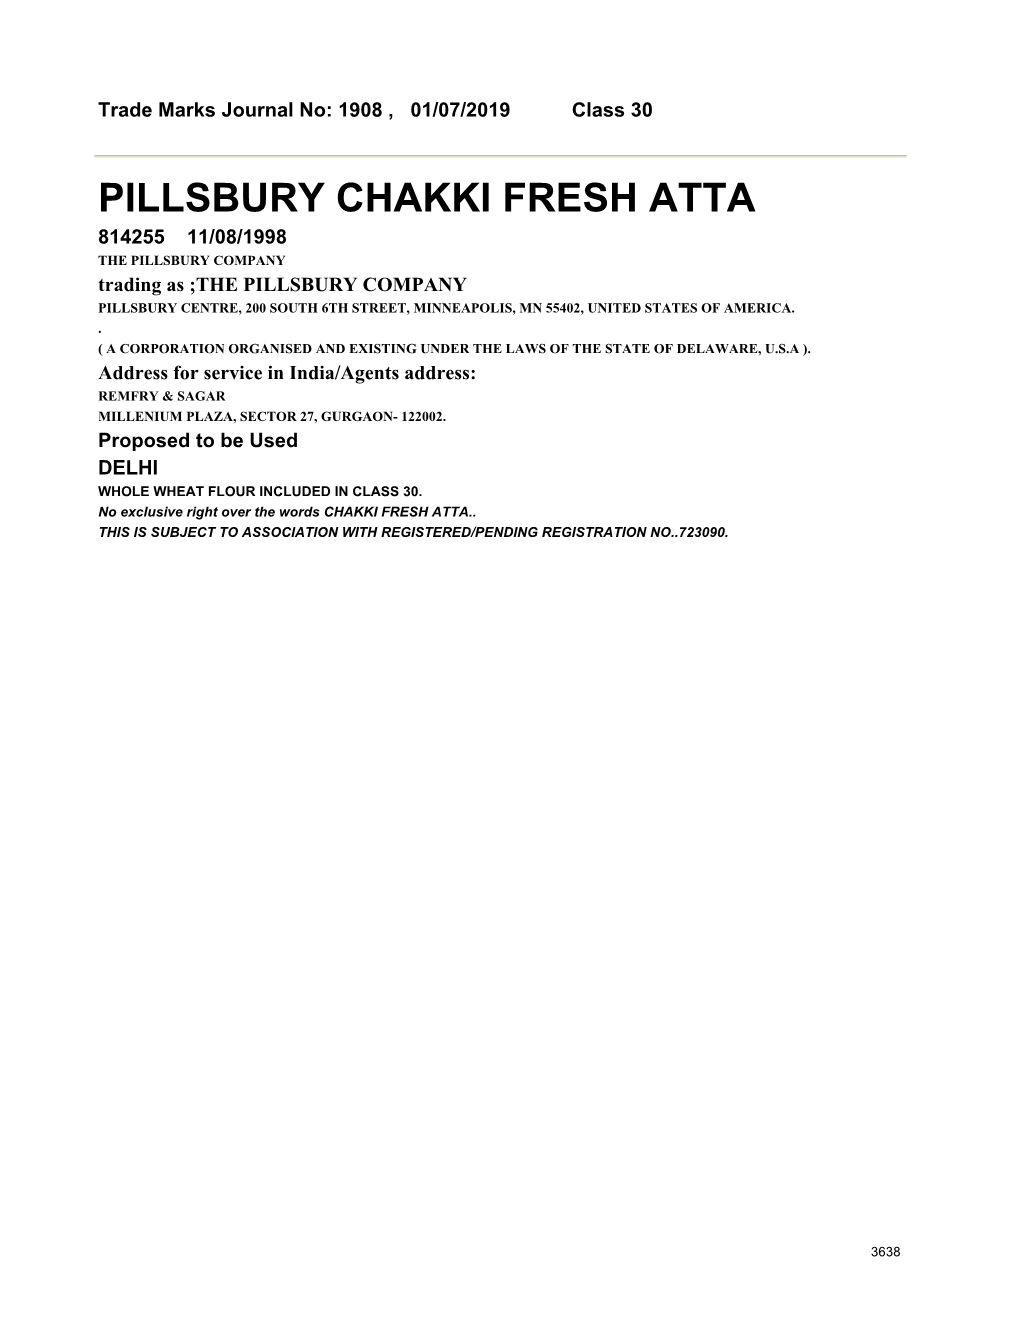 Pillsbury Chakki Fresh Atta